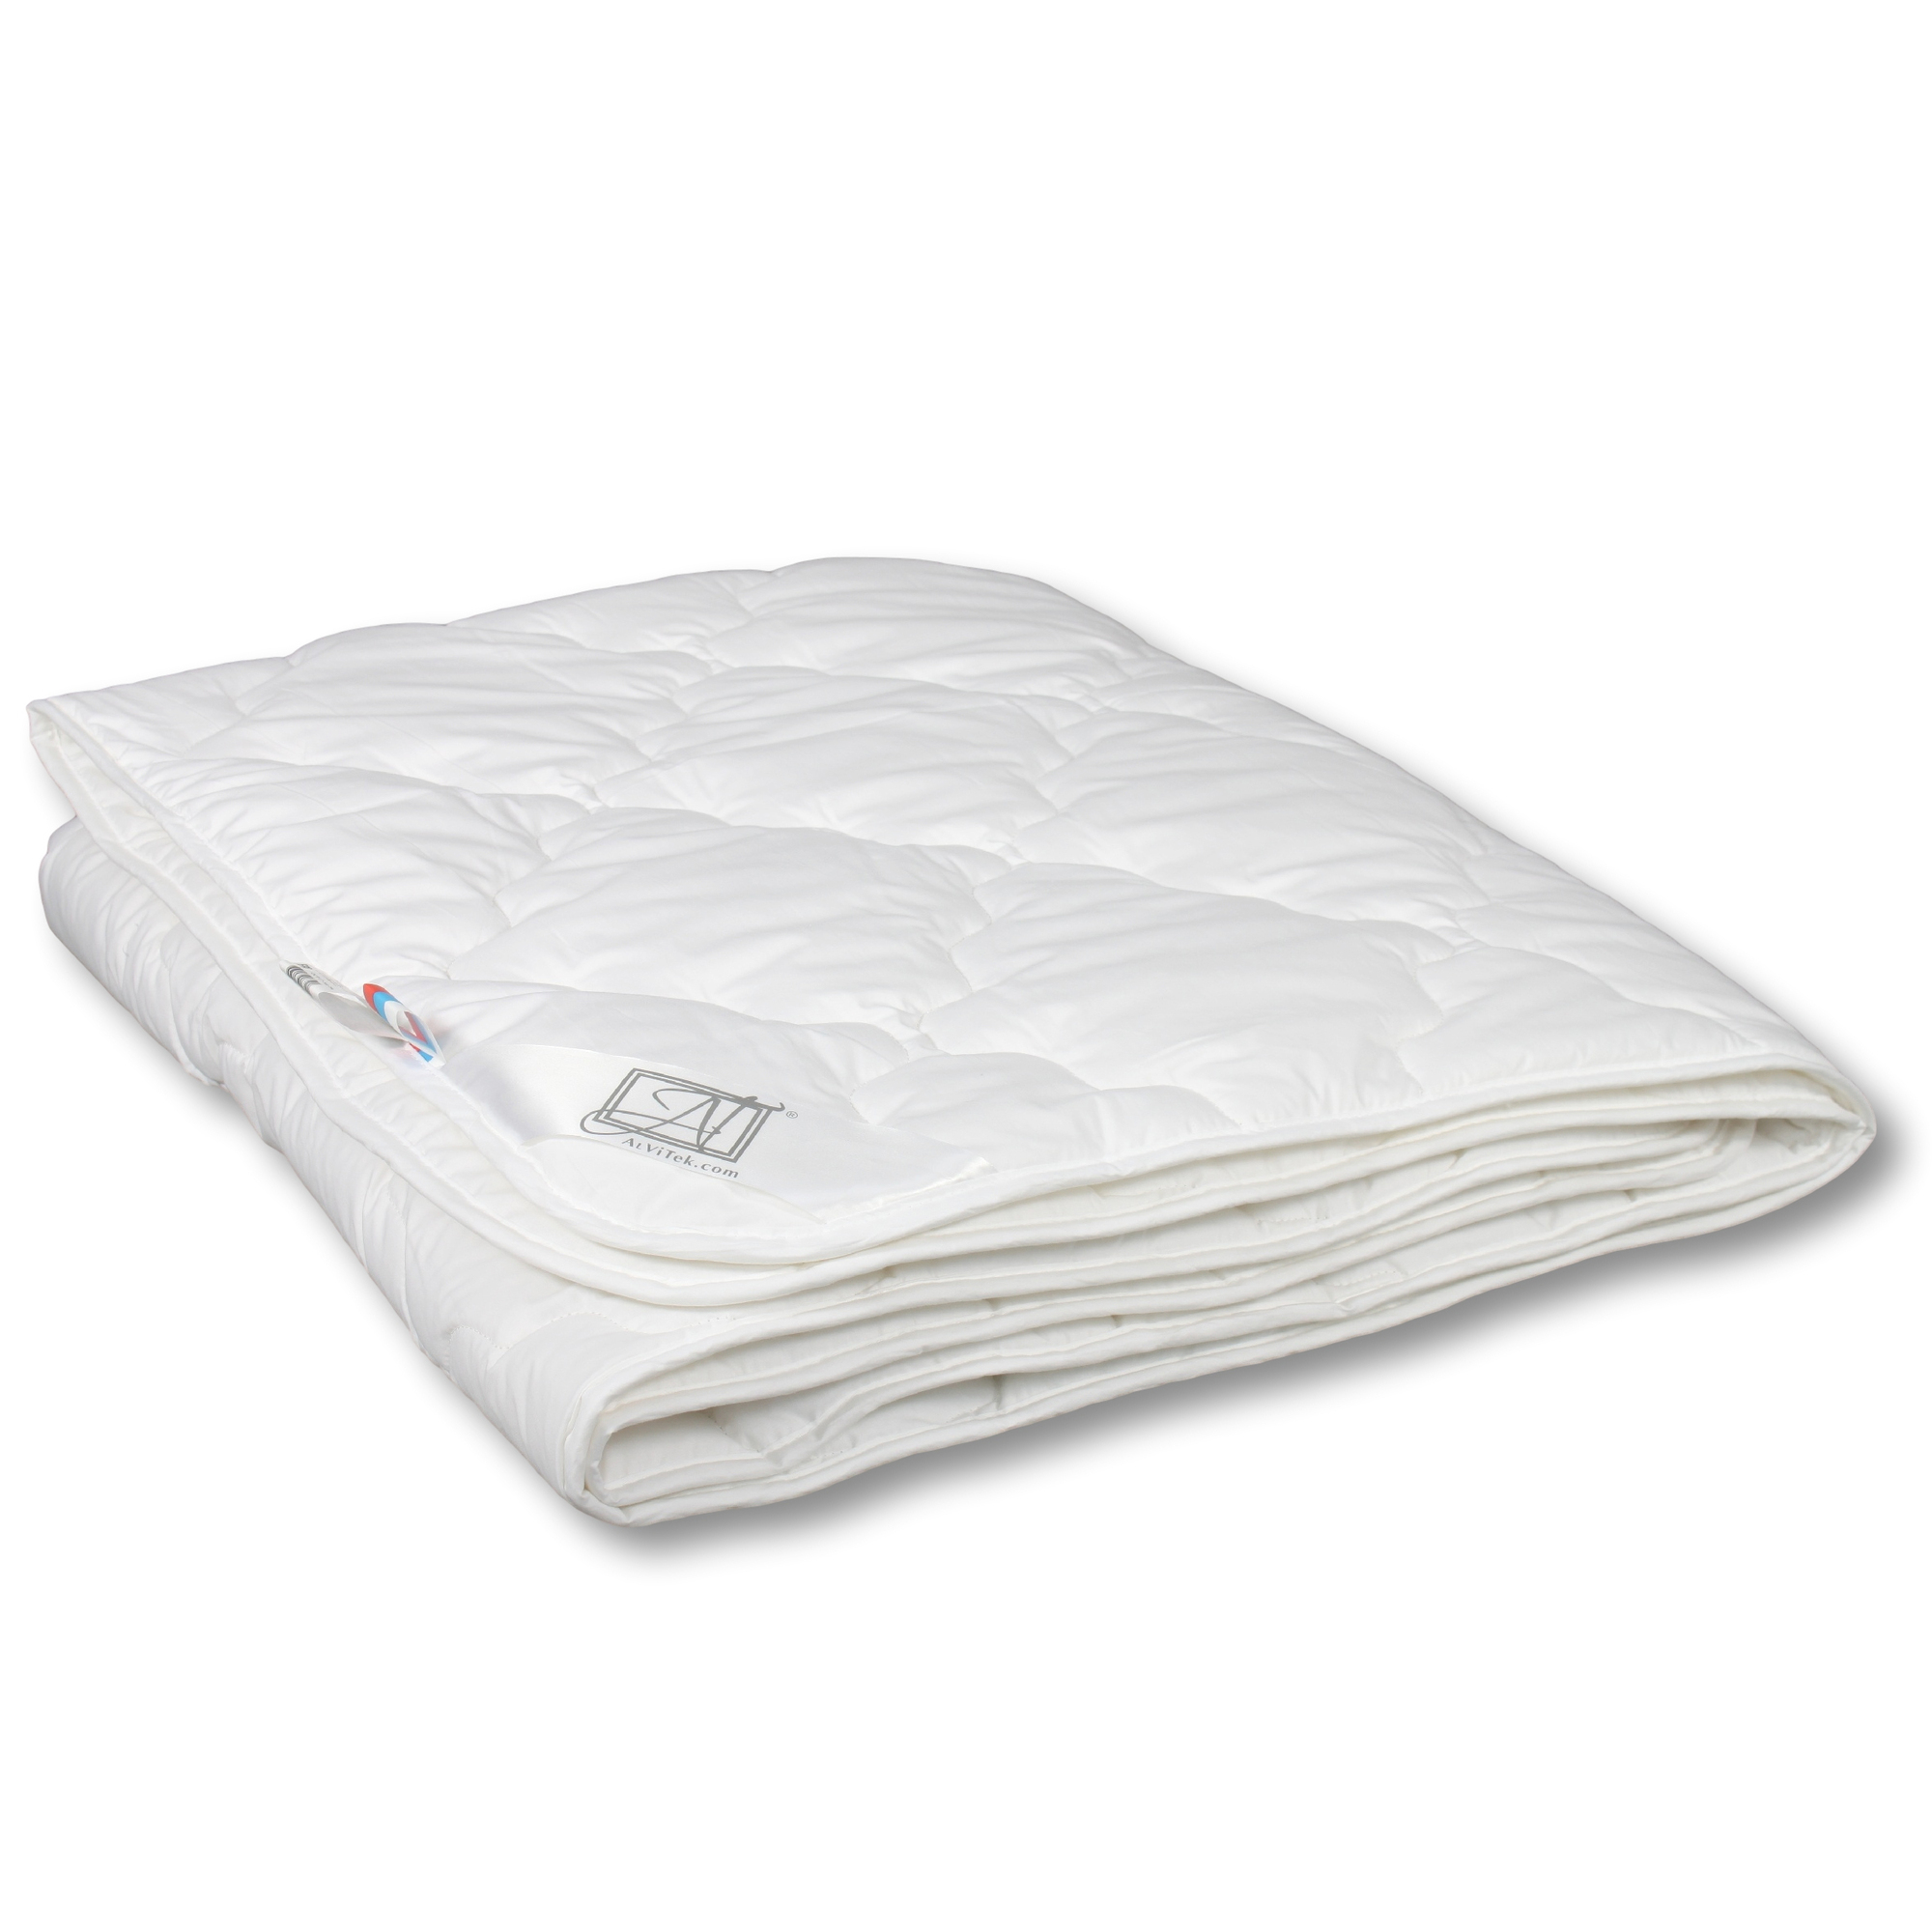 Одеяло Angie Цвет: Белый (200х220 см), размер 200х220 см avt88171 Одеяло Angie Цвет: Белый (200х220 см) - фото 1